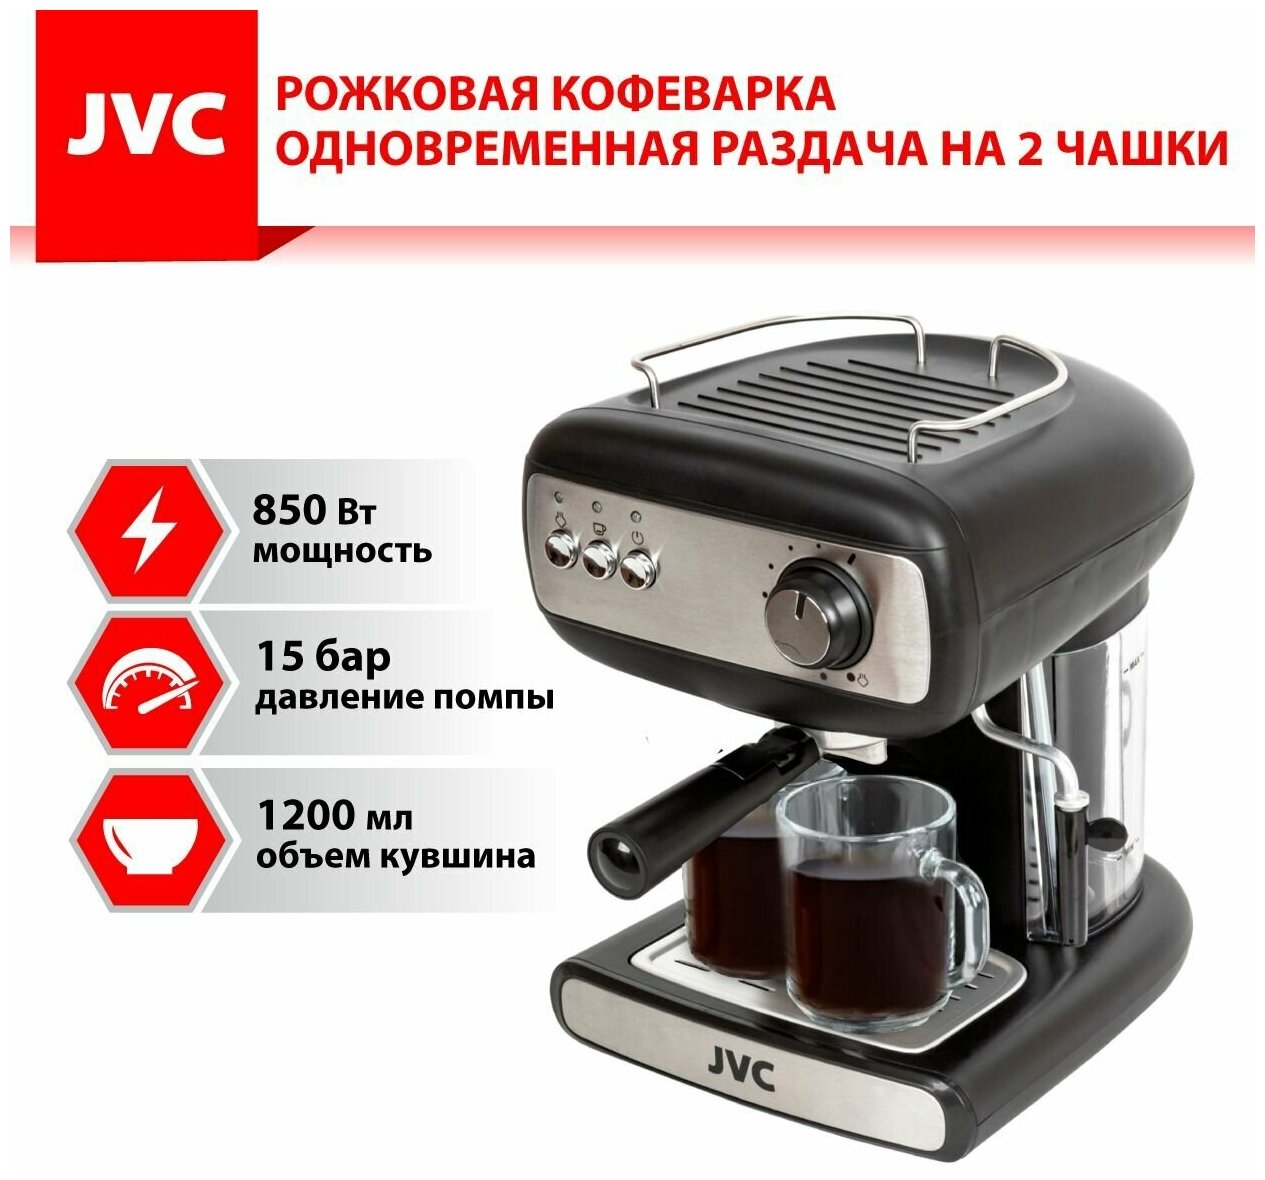 Кофеварка JVC JK-CF26 со съемным контейнером 1,2 л и литым алюминиевым бойлером, раздача на 2 чашки, функция капучинатора, 850 Вт